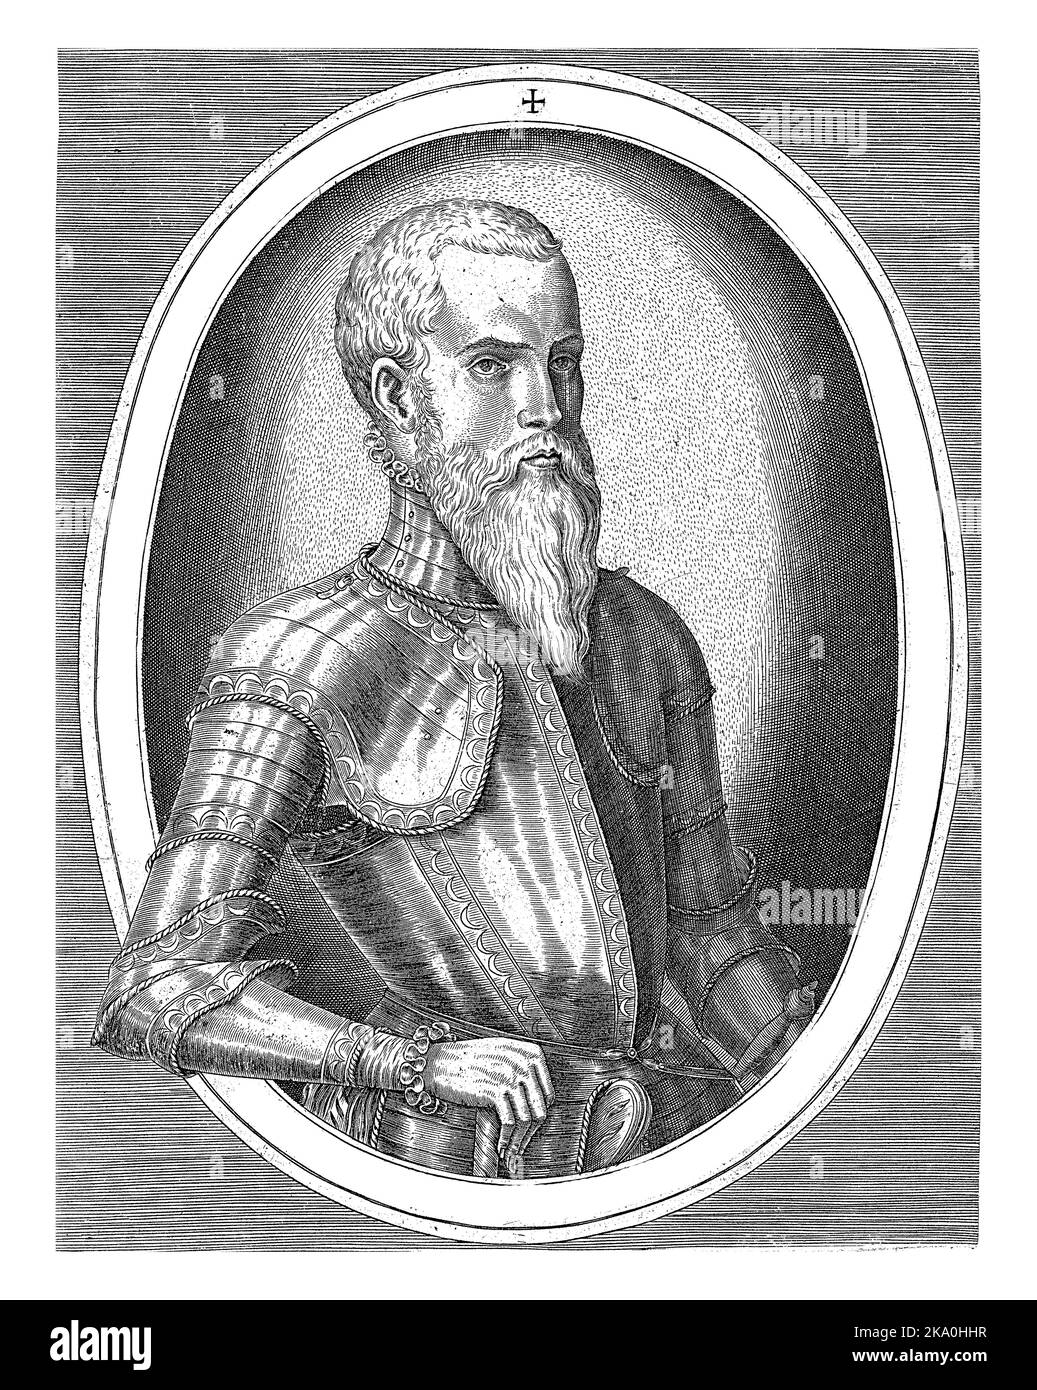 Ritratto a metà lunghezza di Erik XIV di Svezia a destra, vestito con armatura, in una cornice ovale con scritta sul bordo in latino. Foto Stock